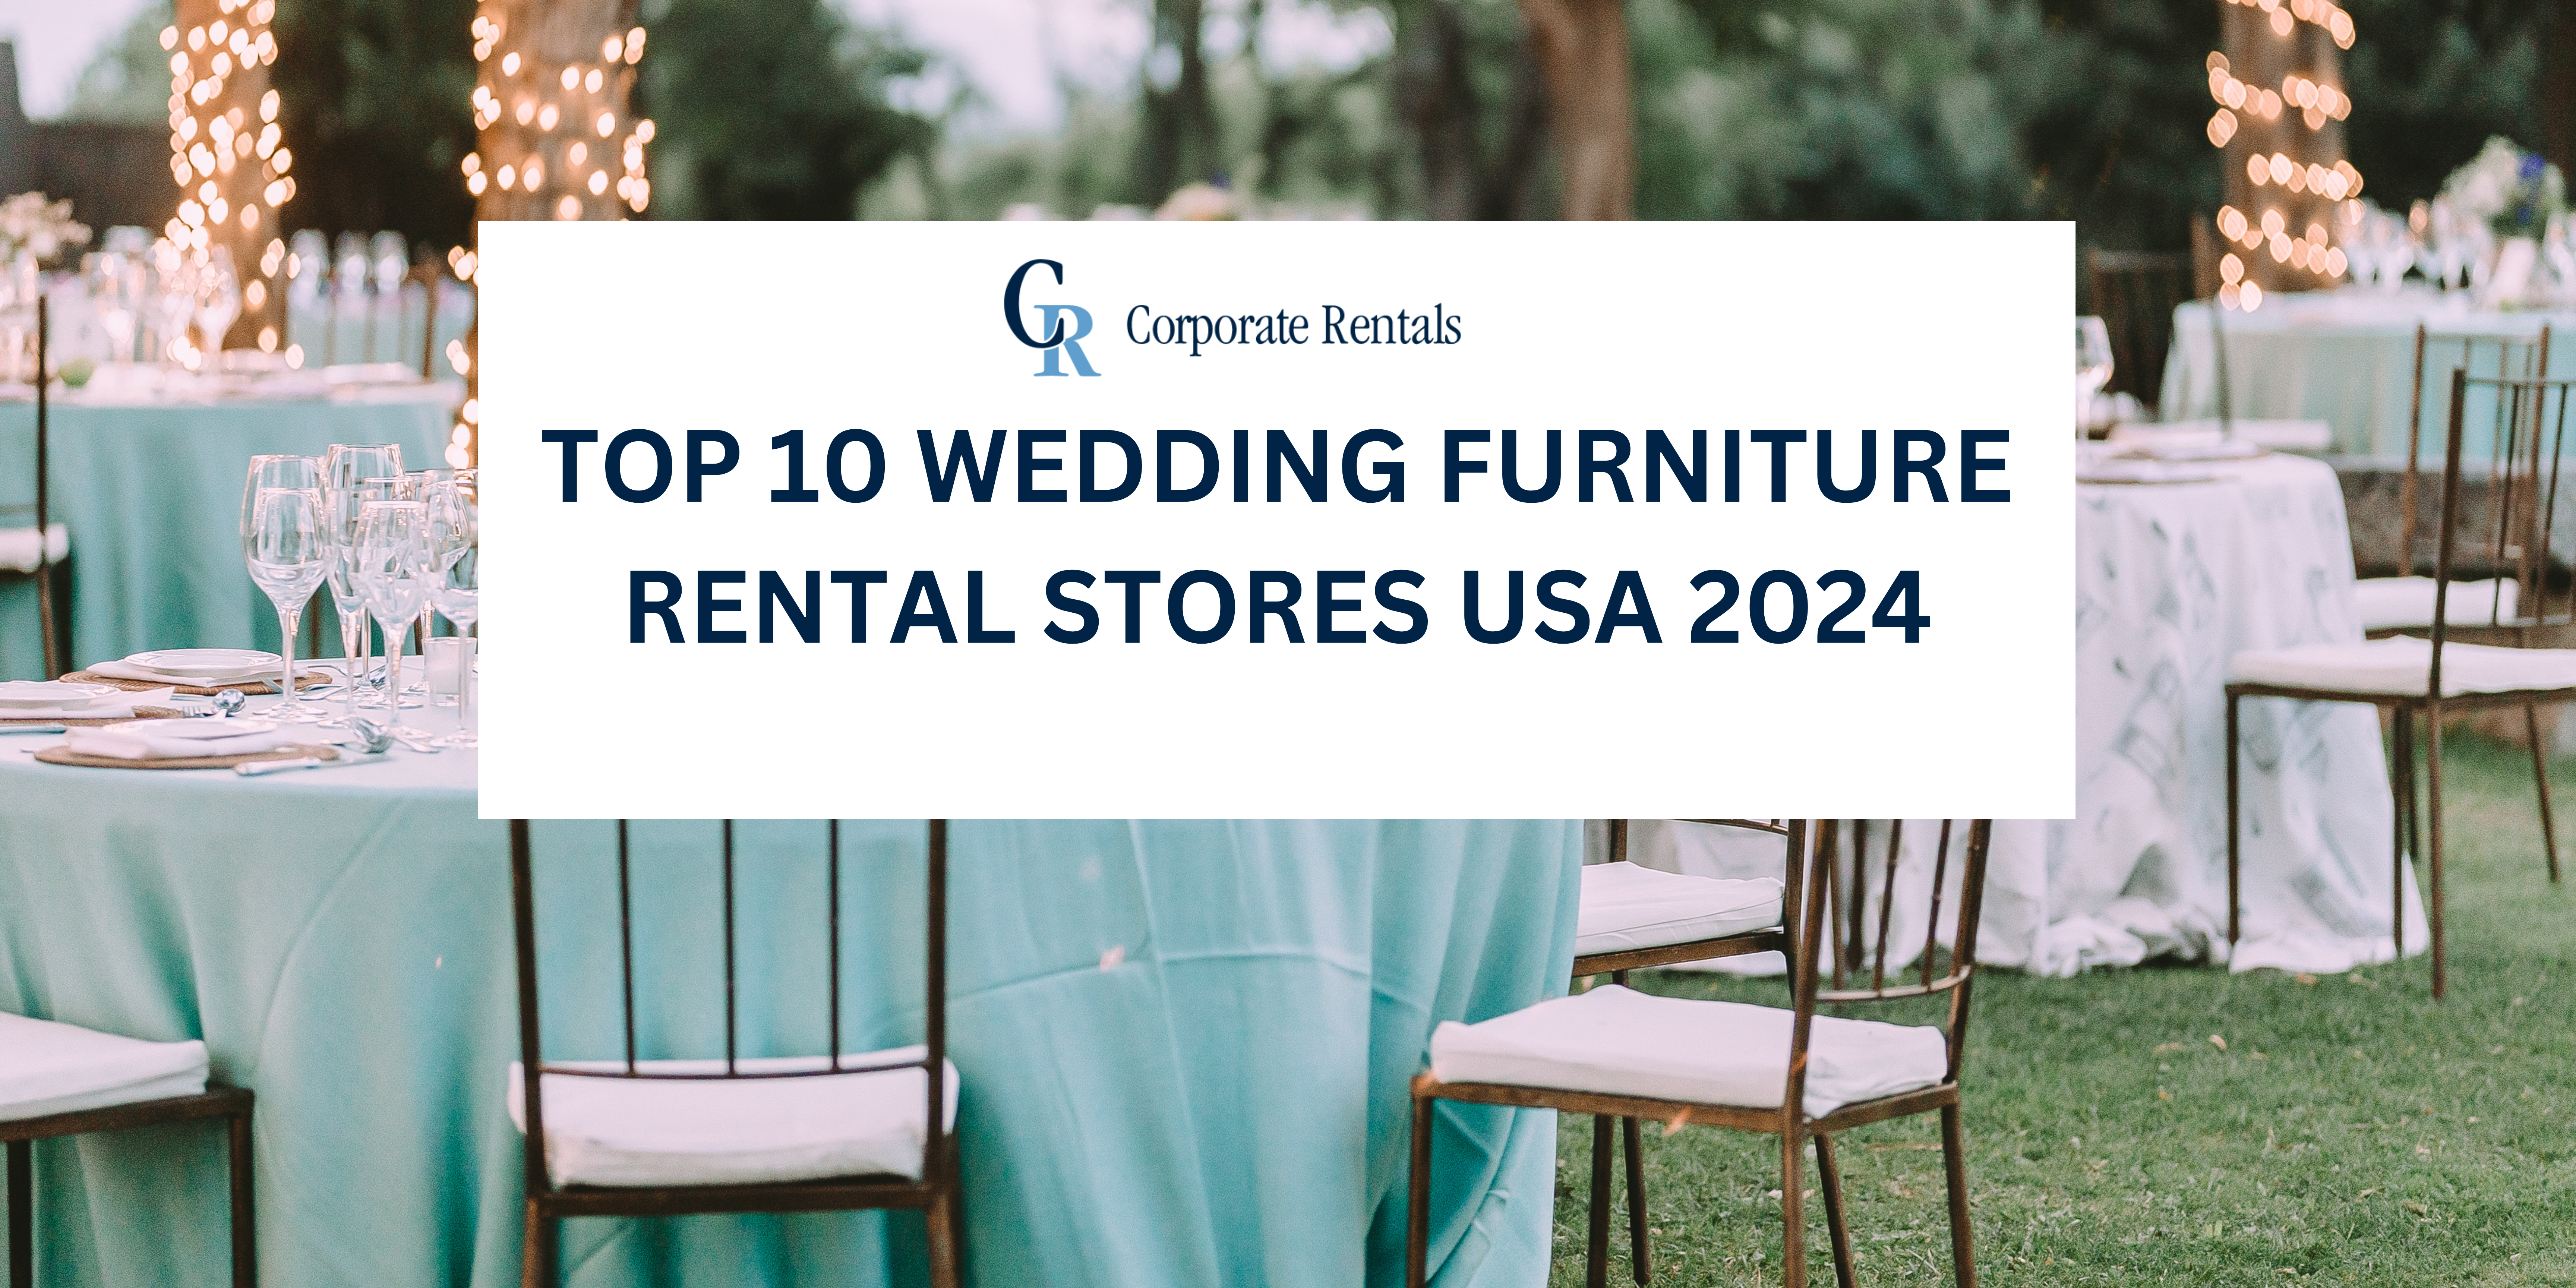 Top 10 Wedding Furniture Rental Stores USA 2024